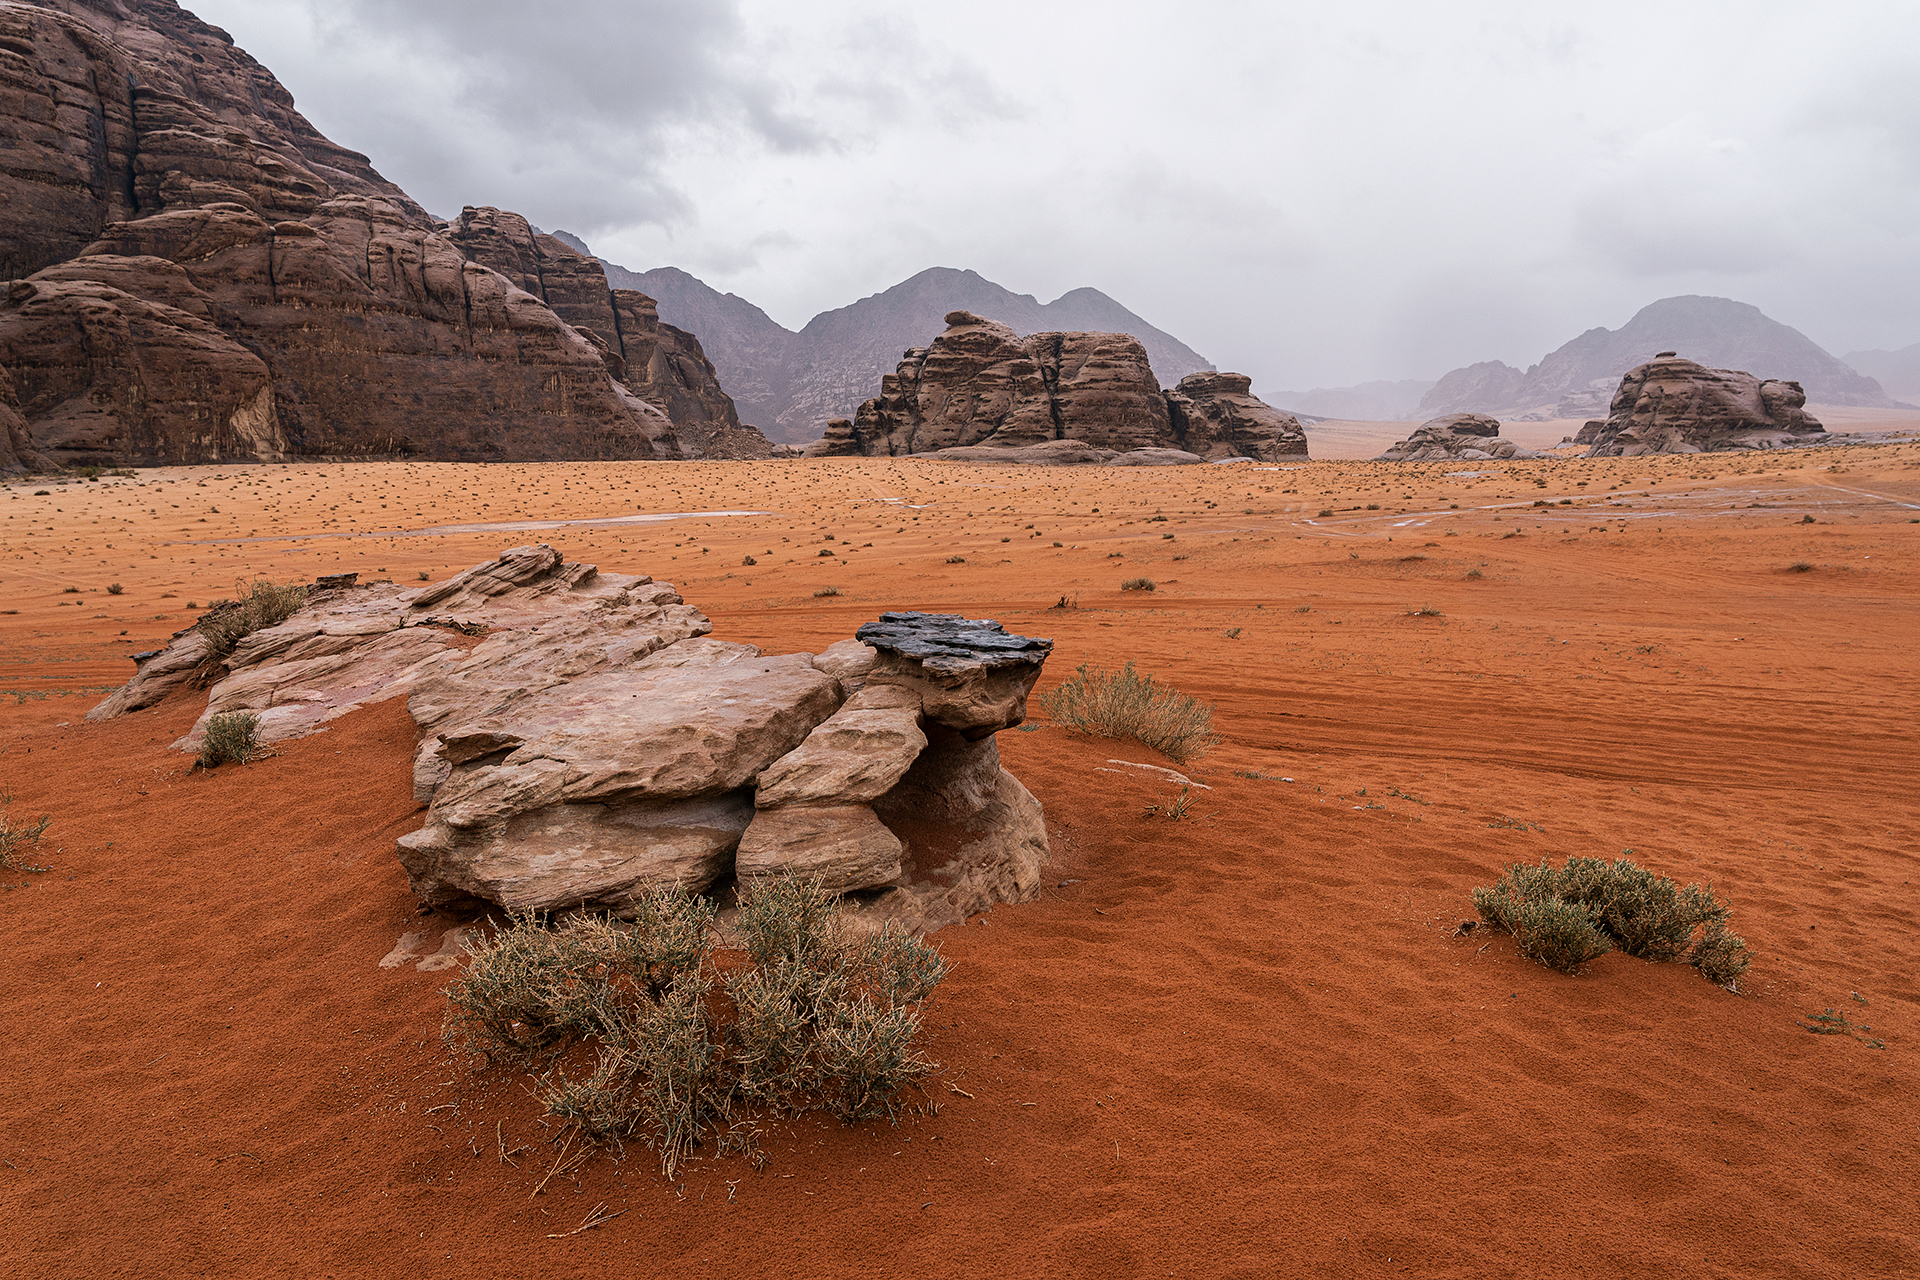 Burza nad pustynią Wadi Rum w Jordanii